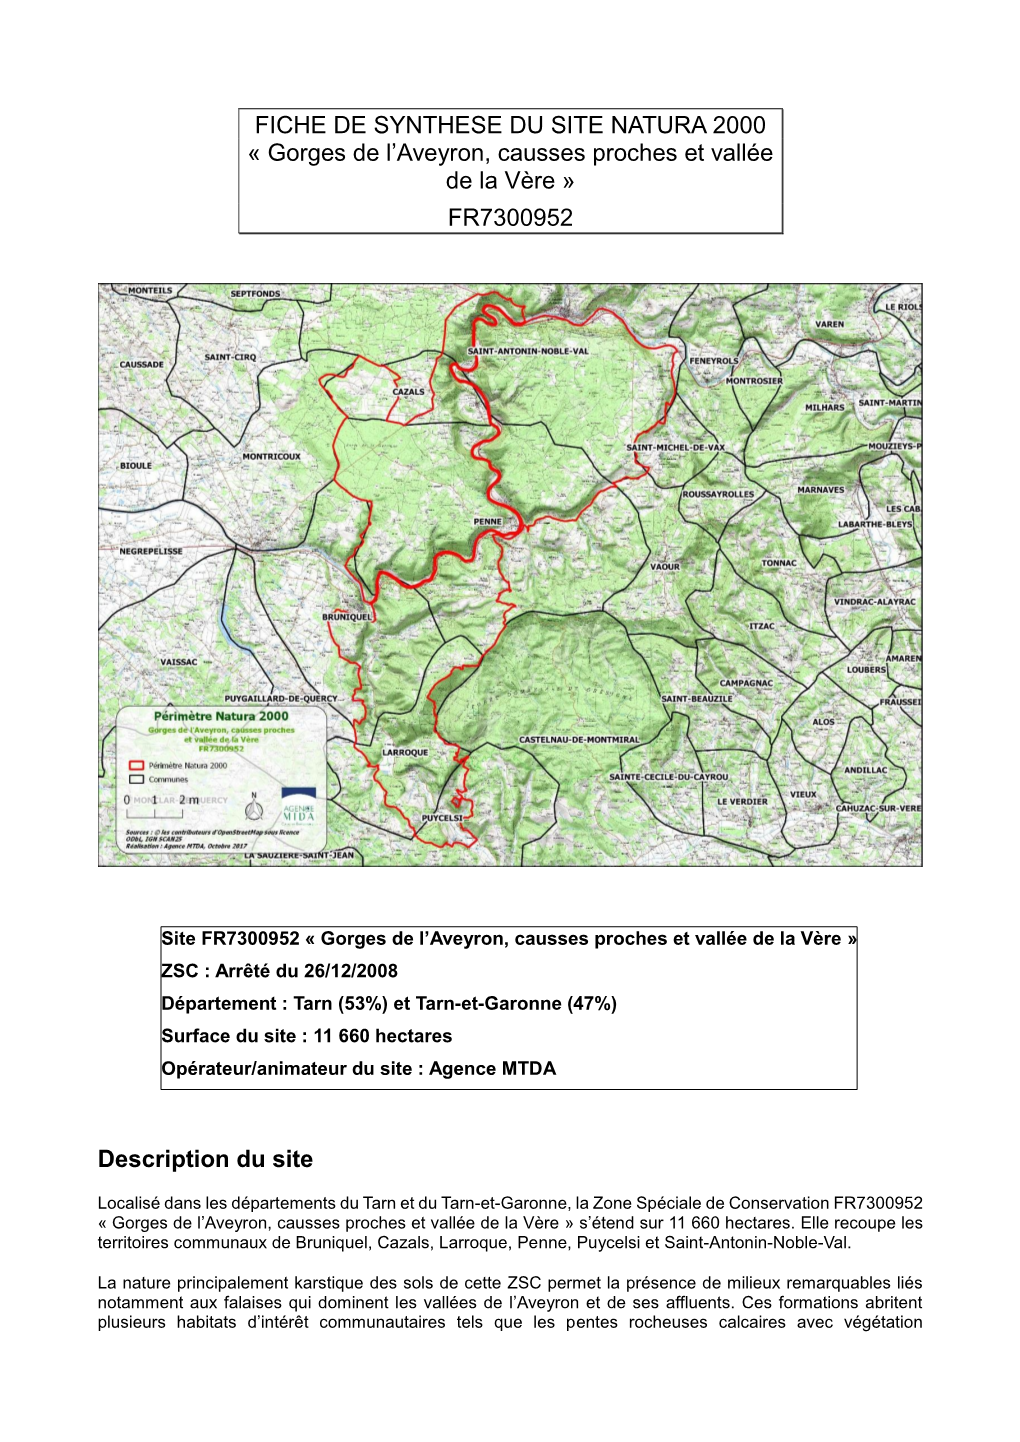 FICHE DE SYNTHESE DU SITE NATURA 2000 « Gorges De L'aveyron, Causses Proches Et Vallée De La Vère » FR7300952 Description